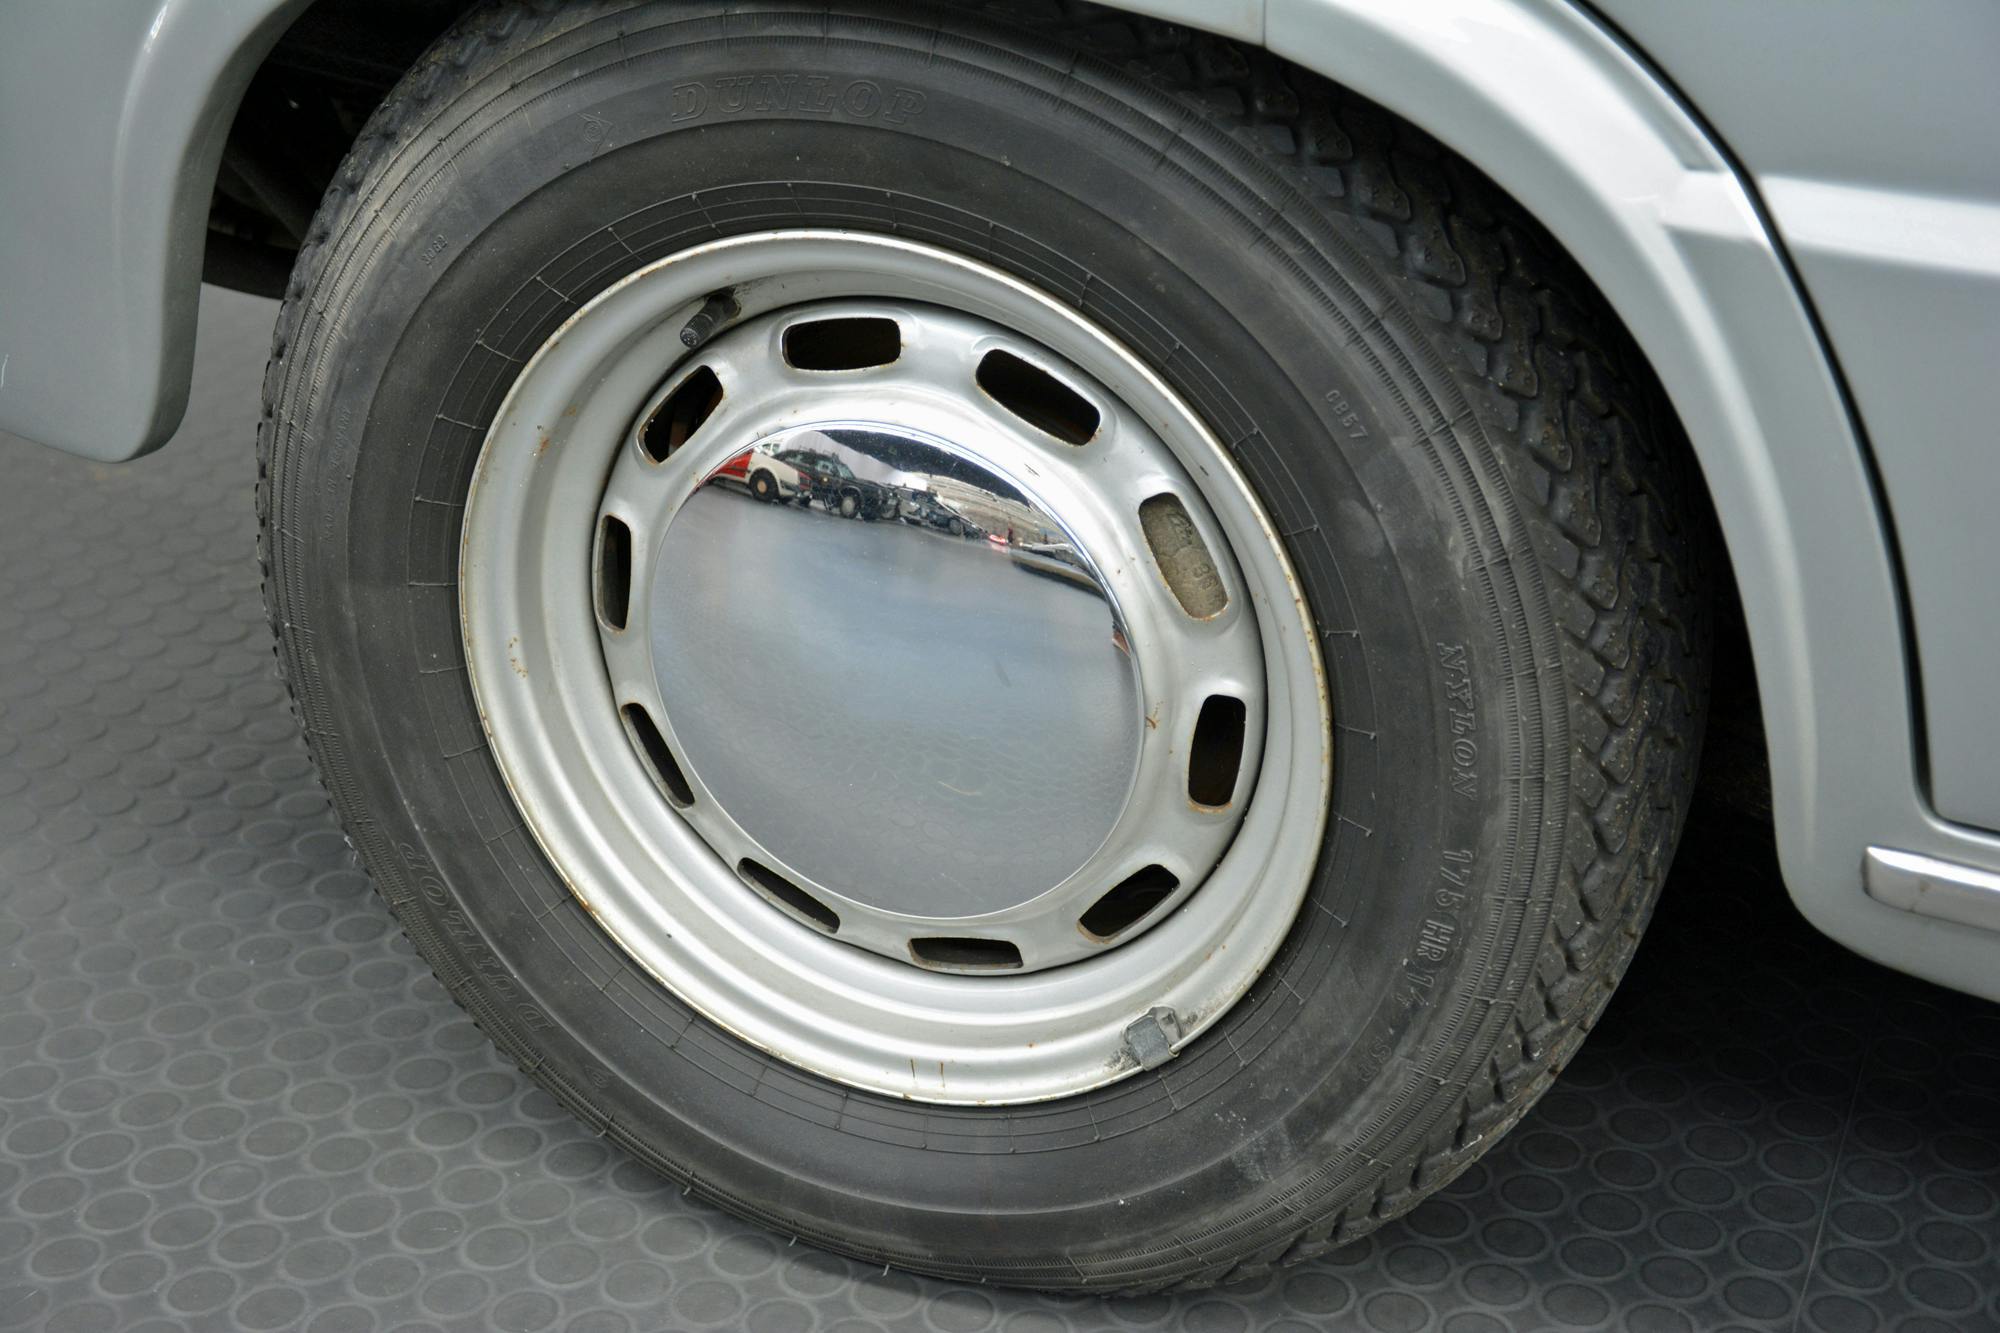 Volkswagen EA 128 wheel hub tire